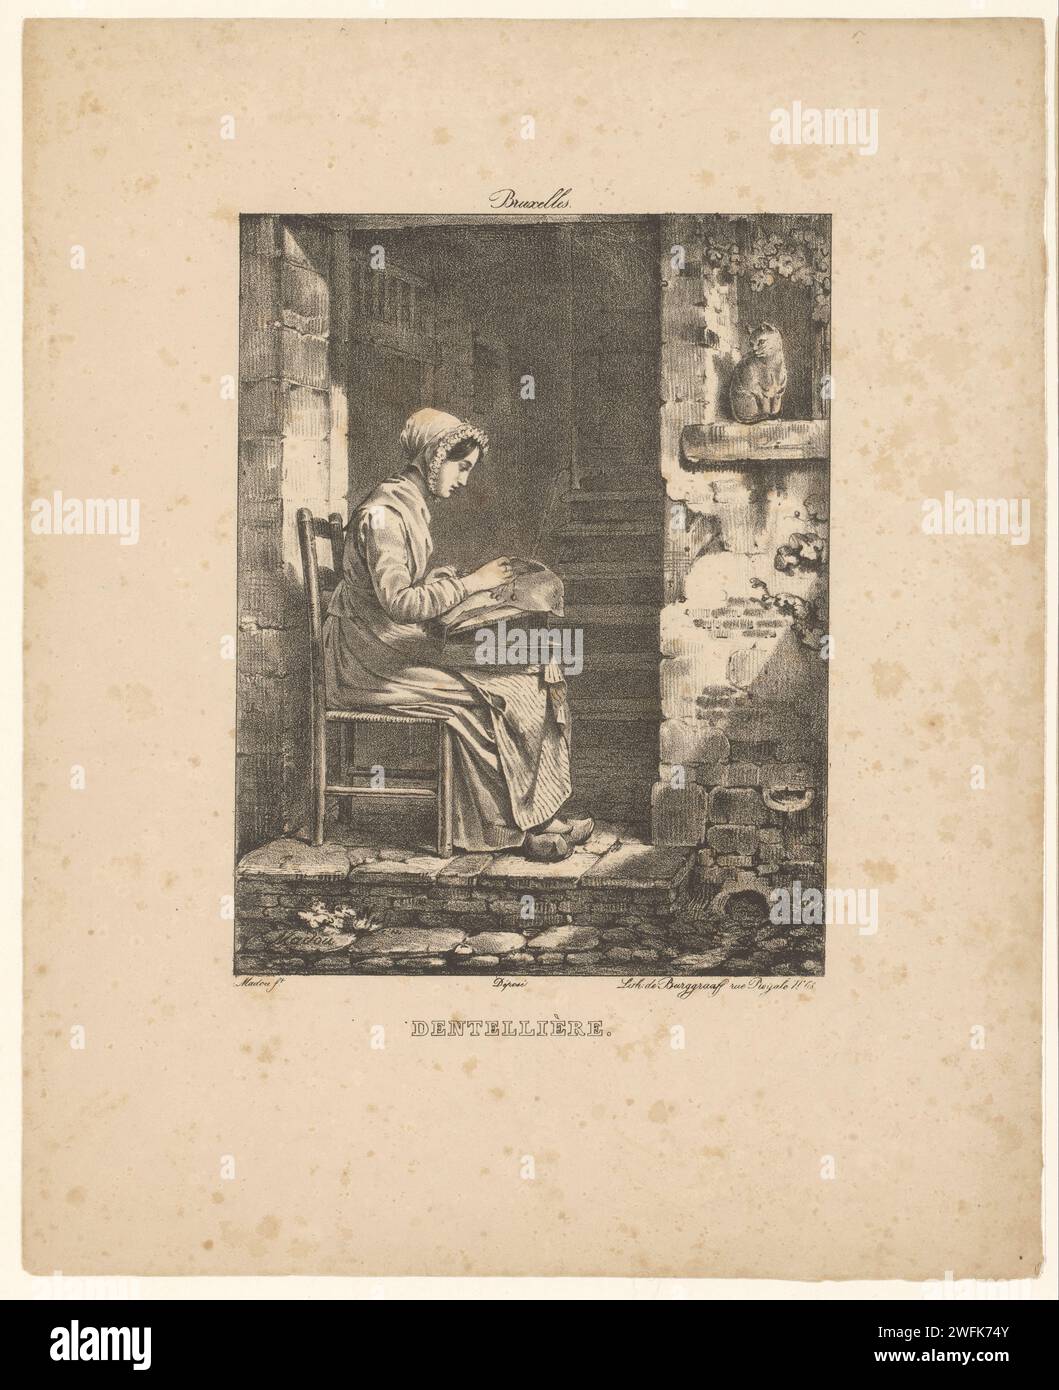 Ouvrier de dentelle au travail, Jean Baptiste Madou, 1825 - 1835 imprimer costume folklorique en papier bruxellois, costume régional. fabrication de lacets. Femme adulte Bruxelles Banque D'Images